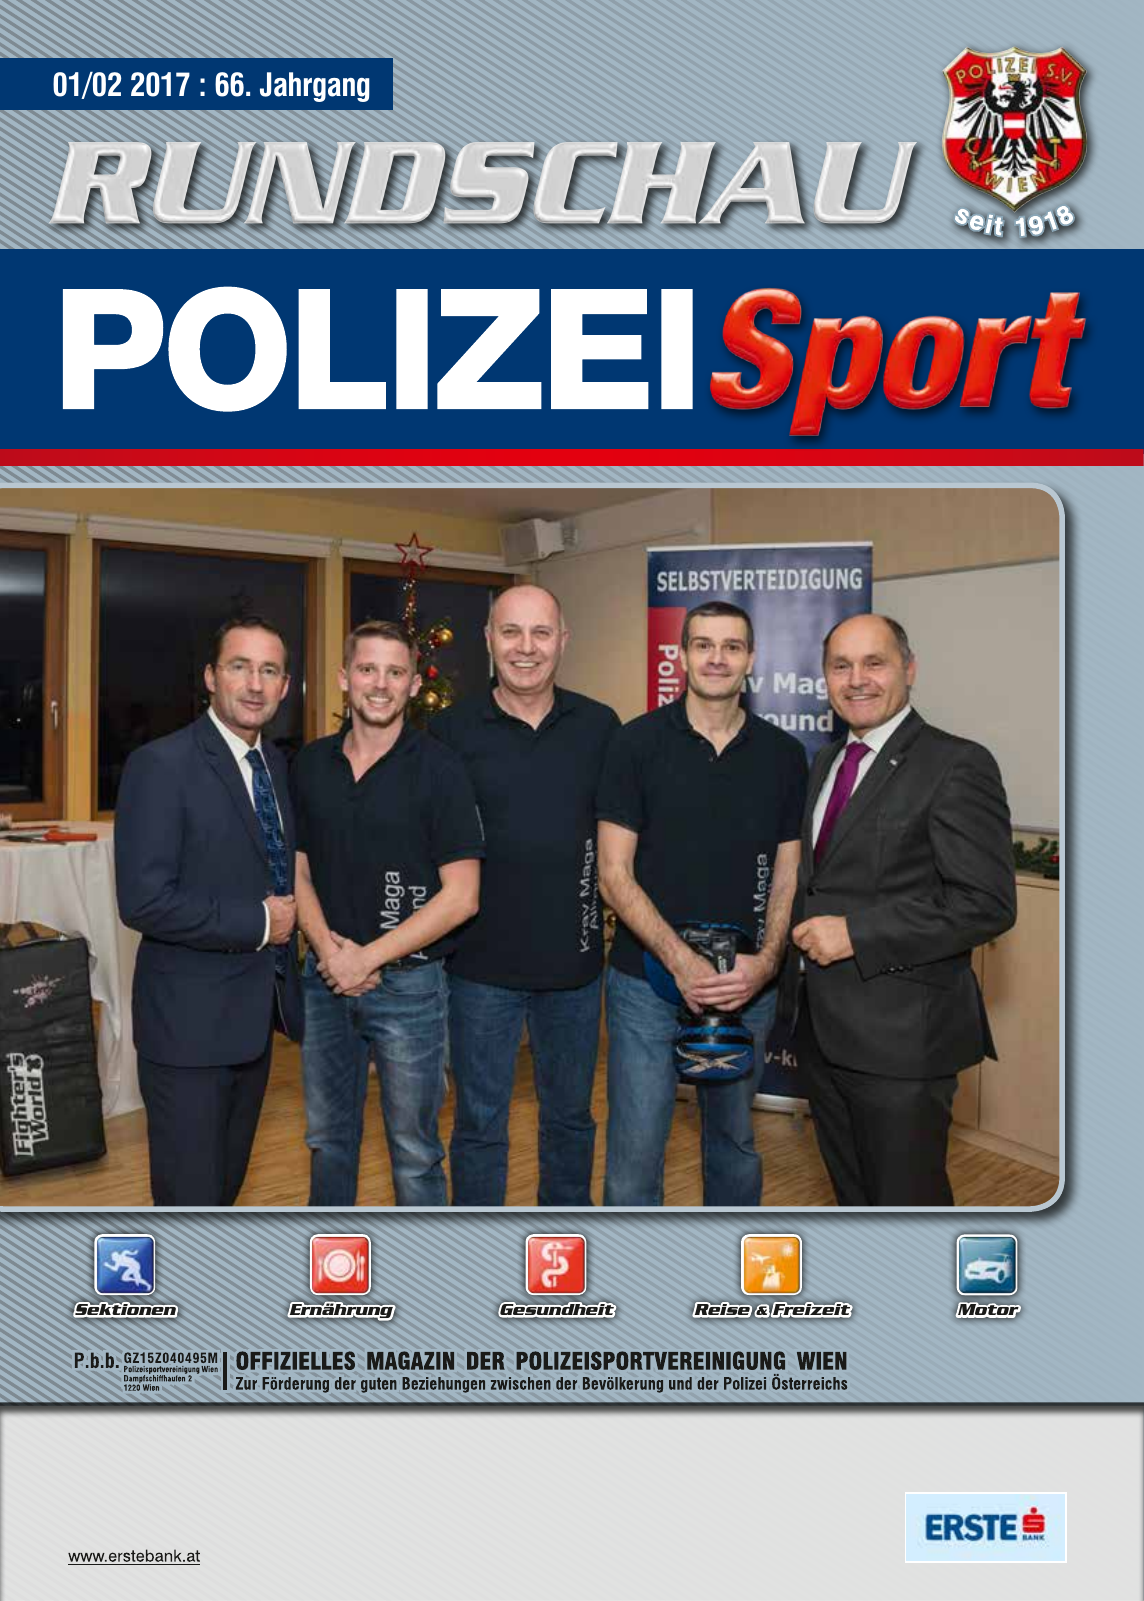 Vorschau Rundschau Polizei Sport 01-02/2017 Seite 1